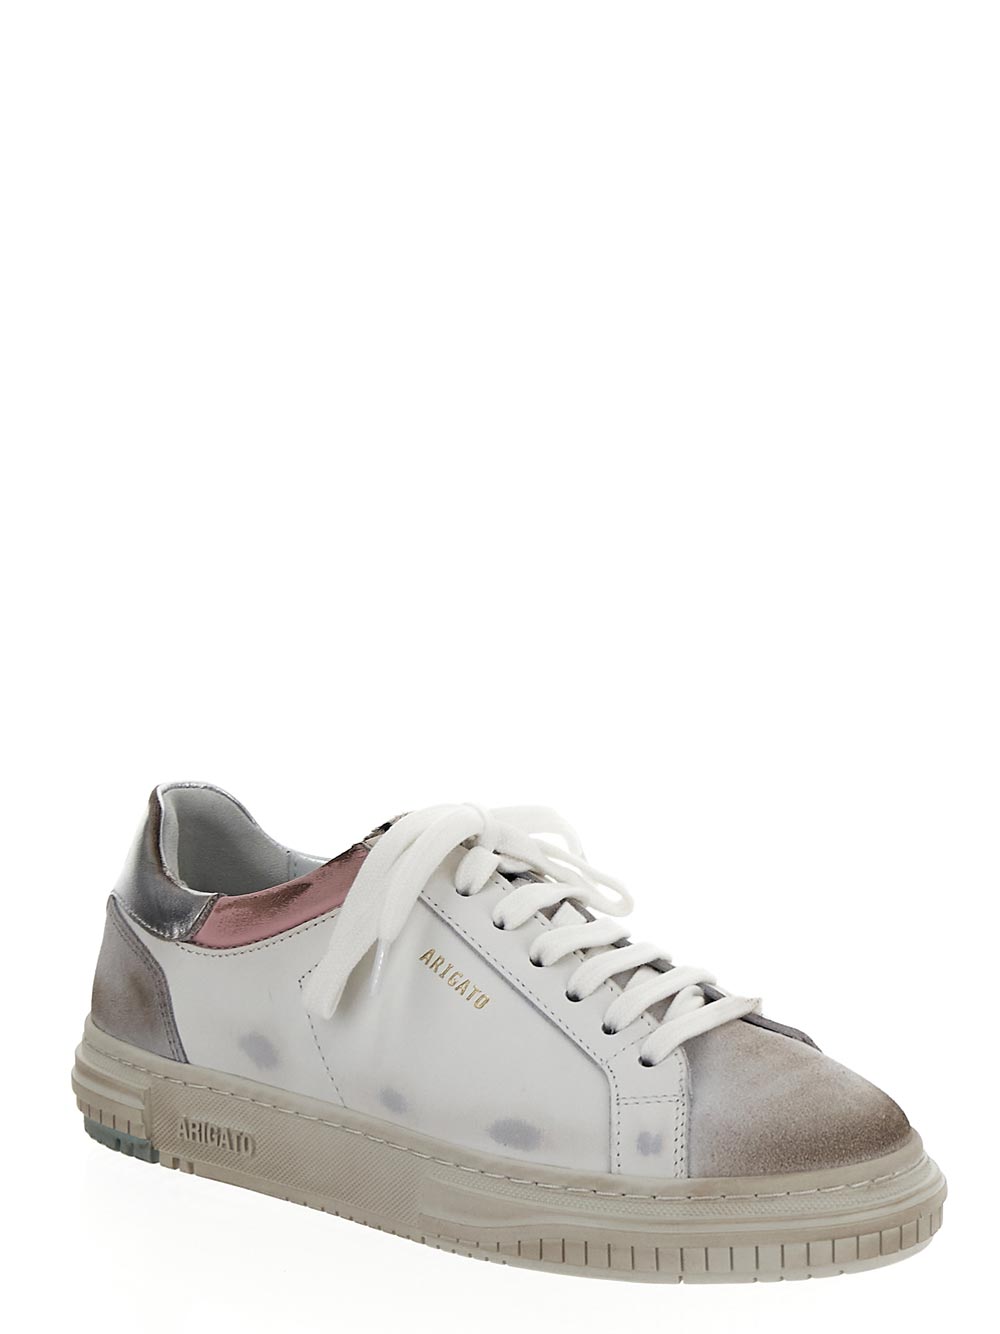 AXEL ARIGATO AXEL ARIGATO Sneaker white F1032001WHITEPINK